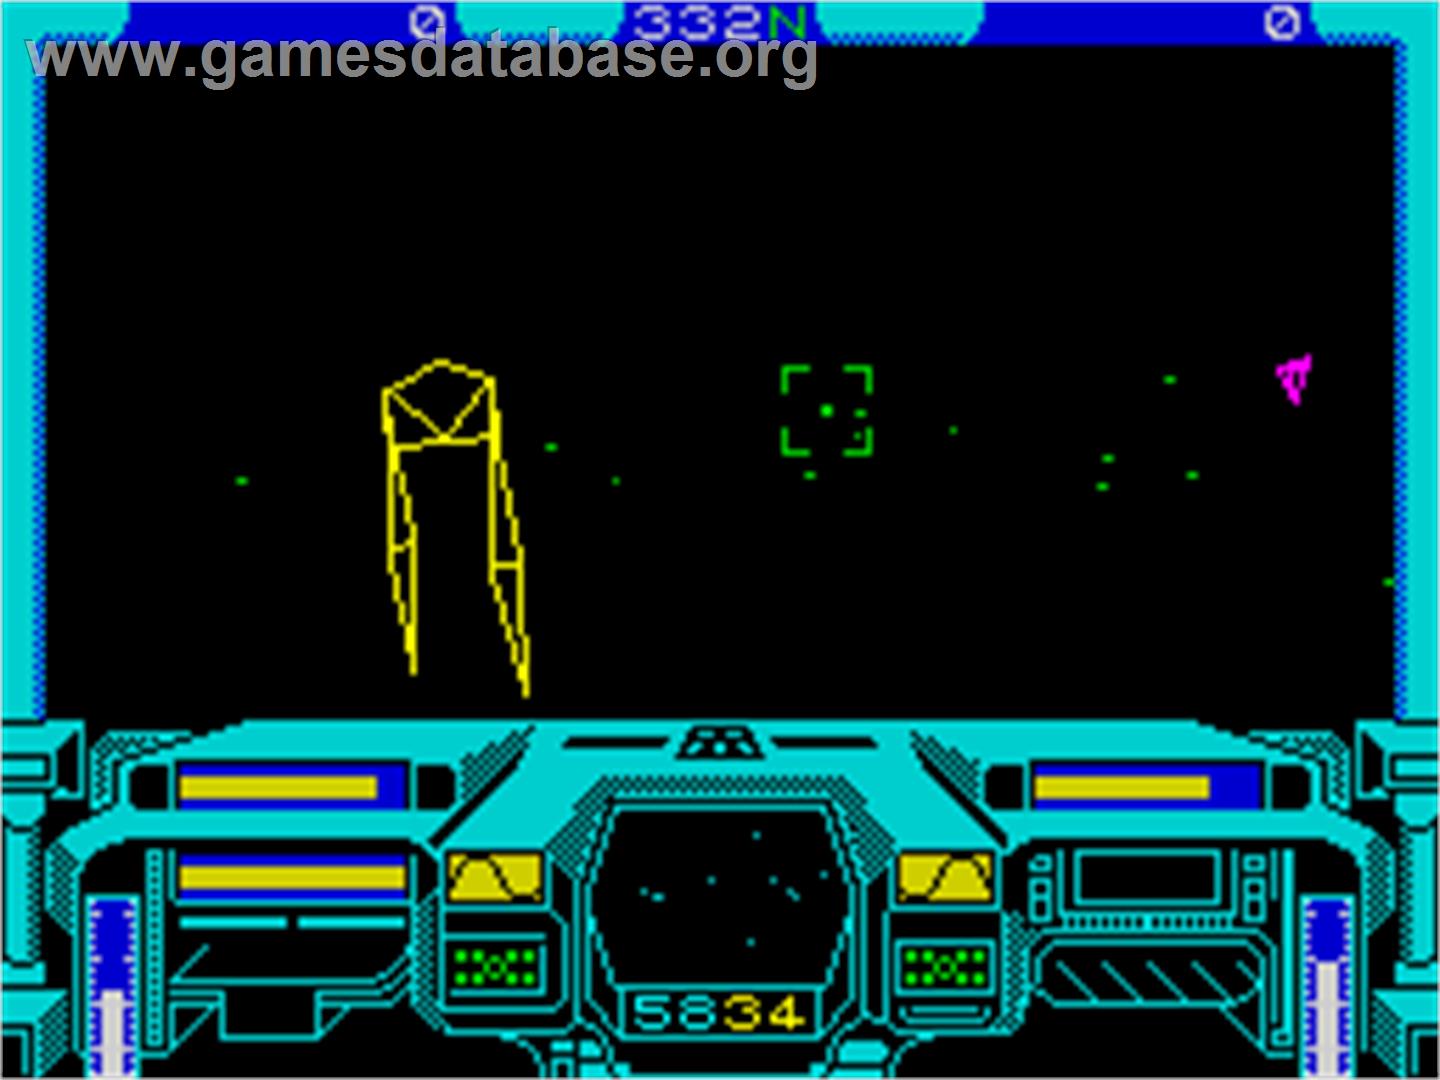 Starglider 2 - Sinclair ZX Spectrum - Artwork - In Game